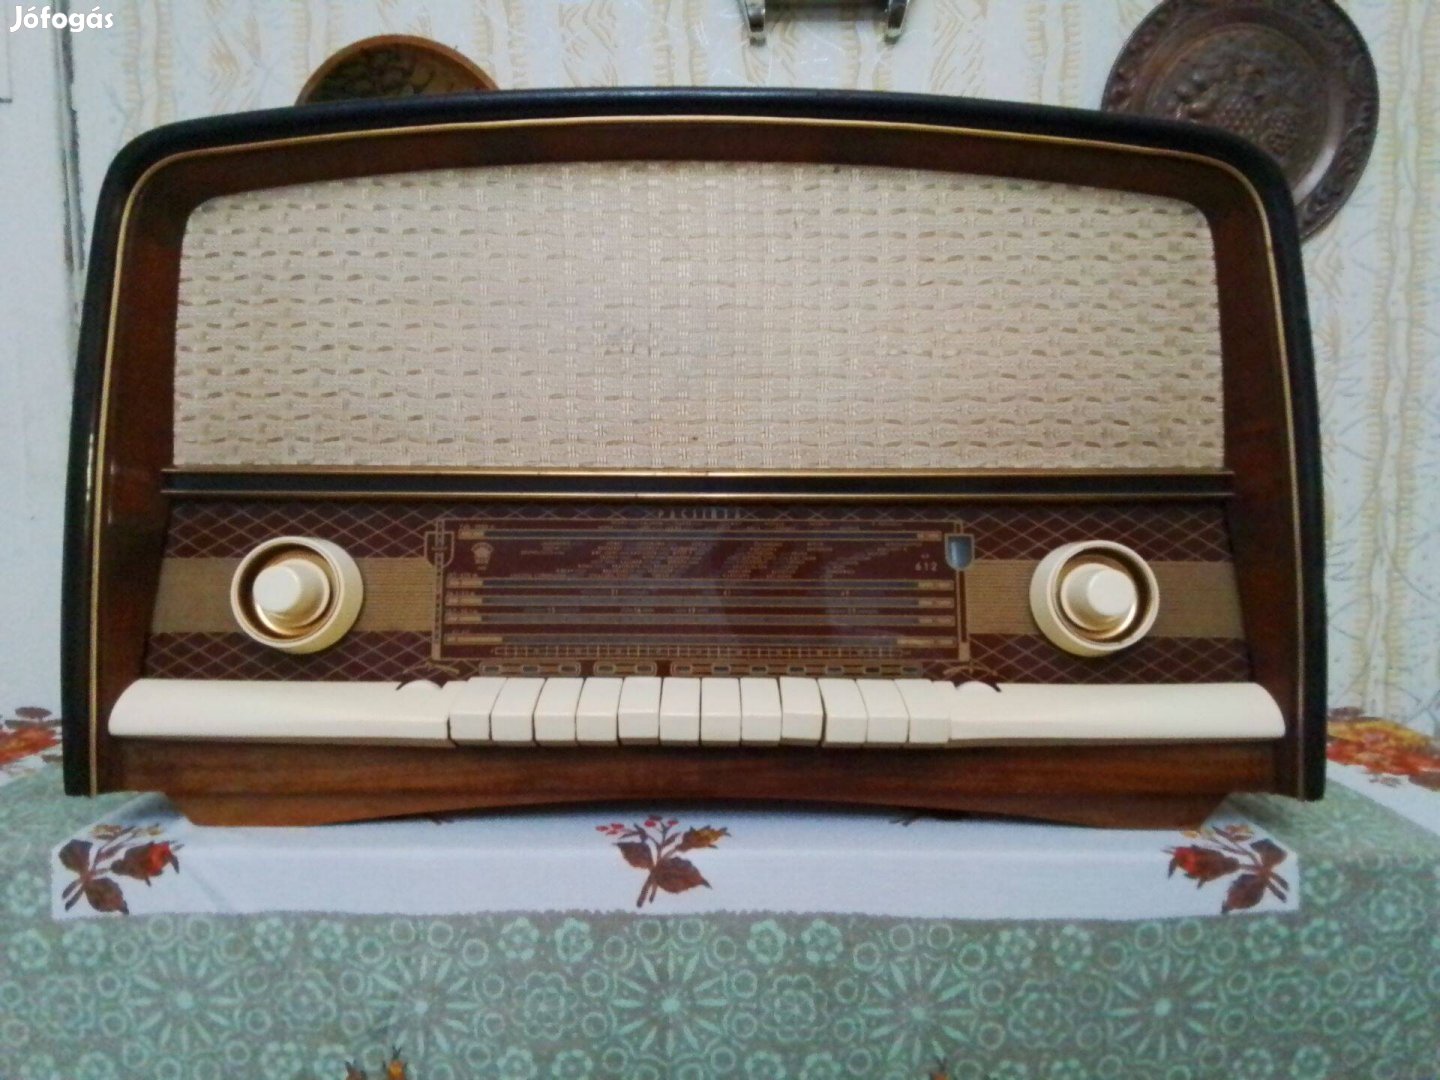 Eladó egy 1960- as évekbeli rádió Pacsirta rádió